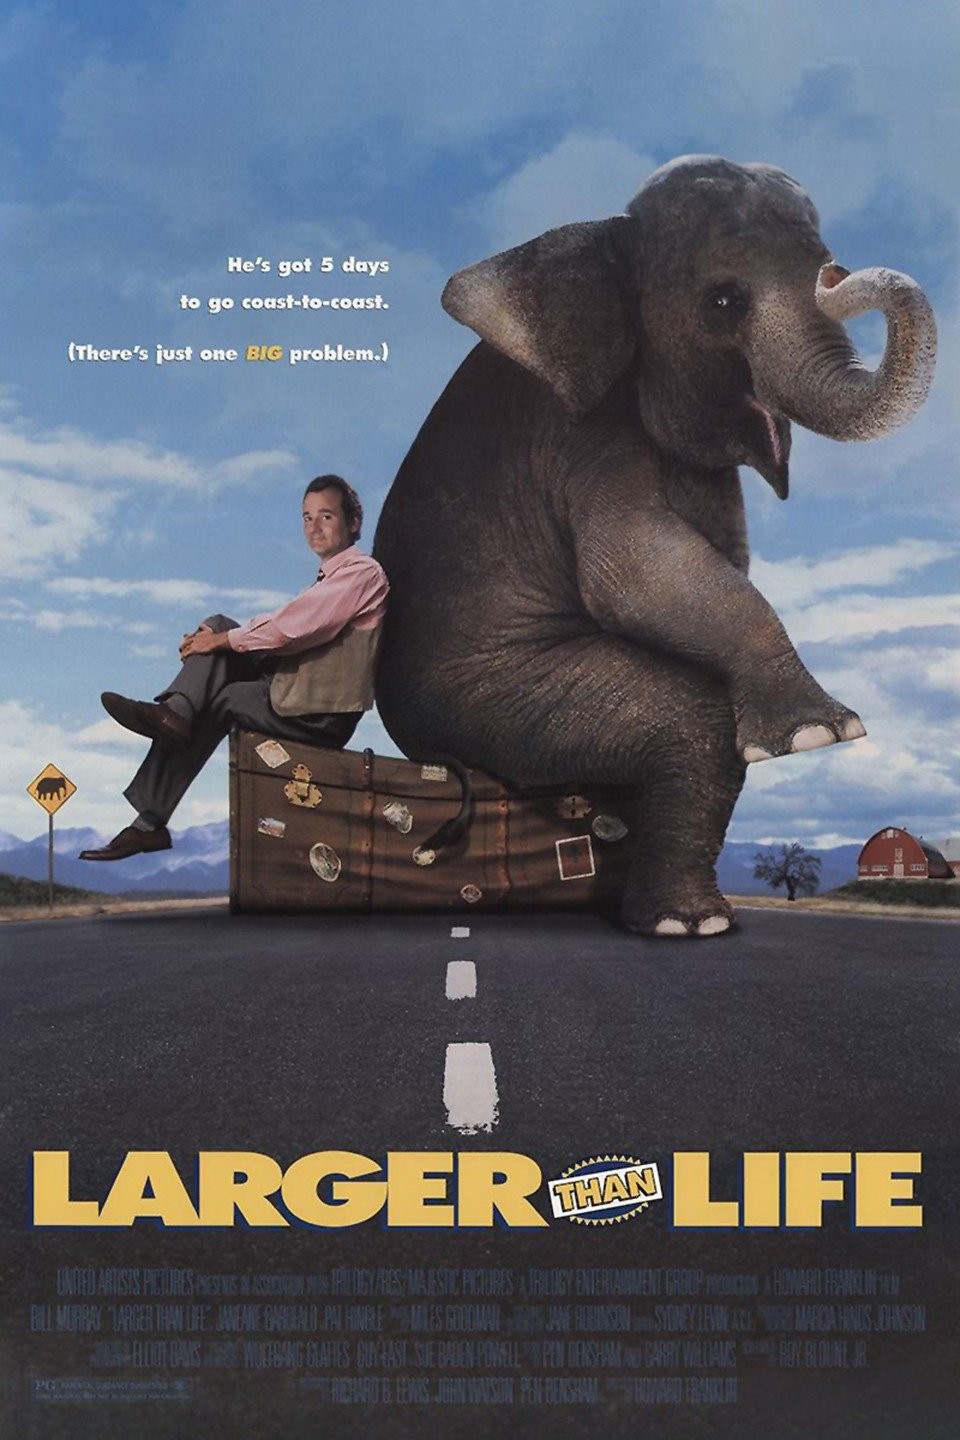 The White Elephant (2009) - IMDb